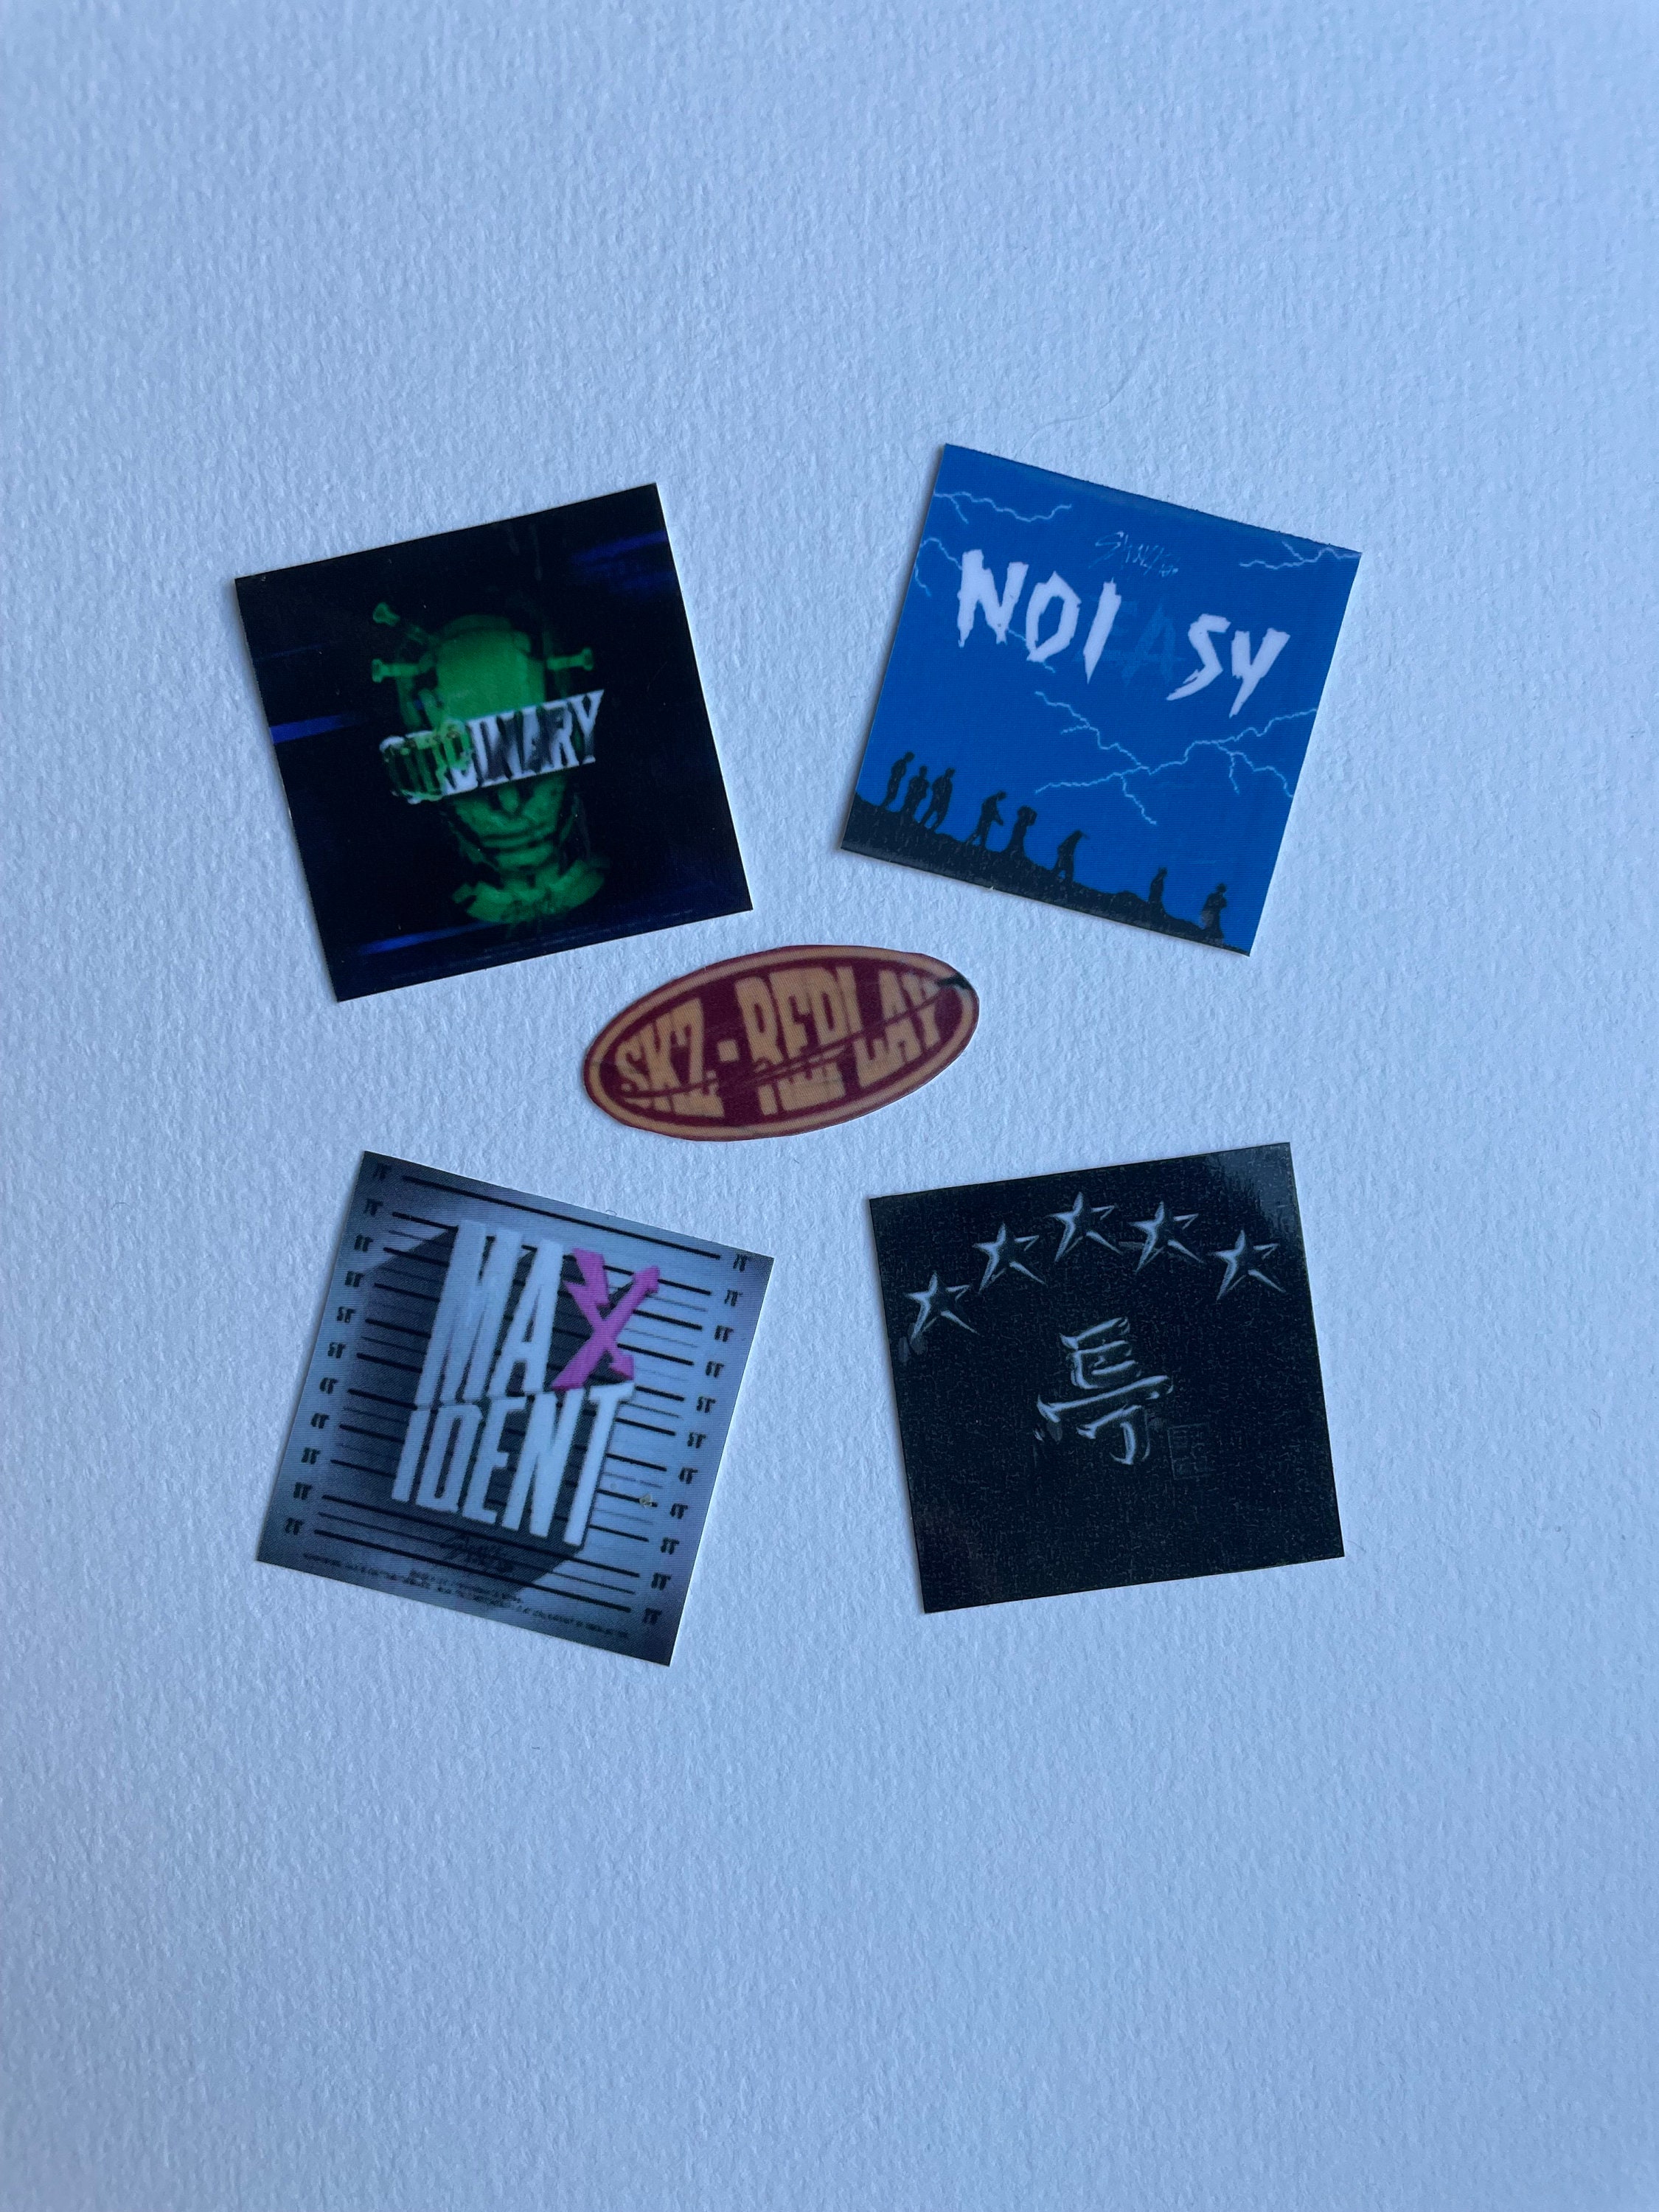 Finally used album stickers : r/straykids